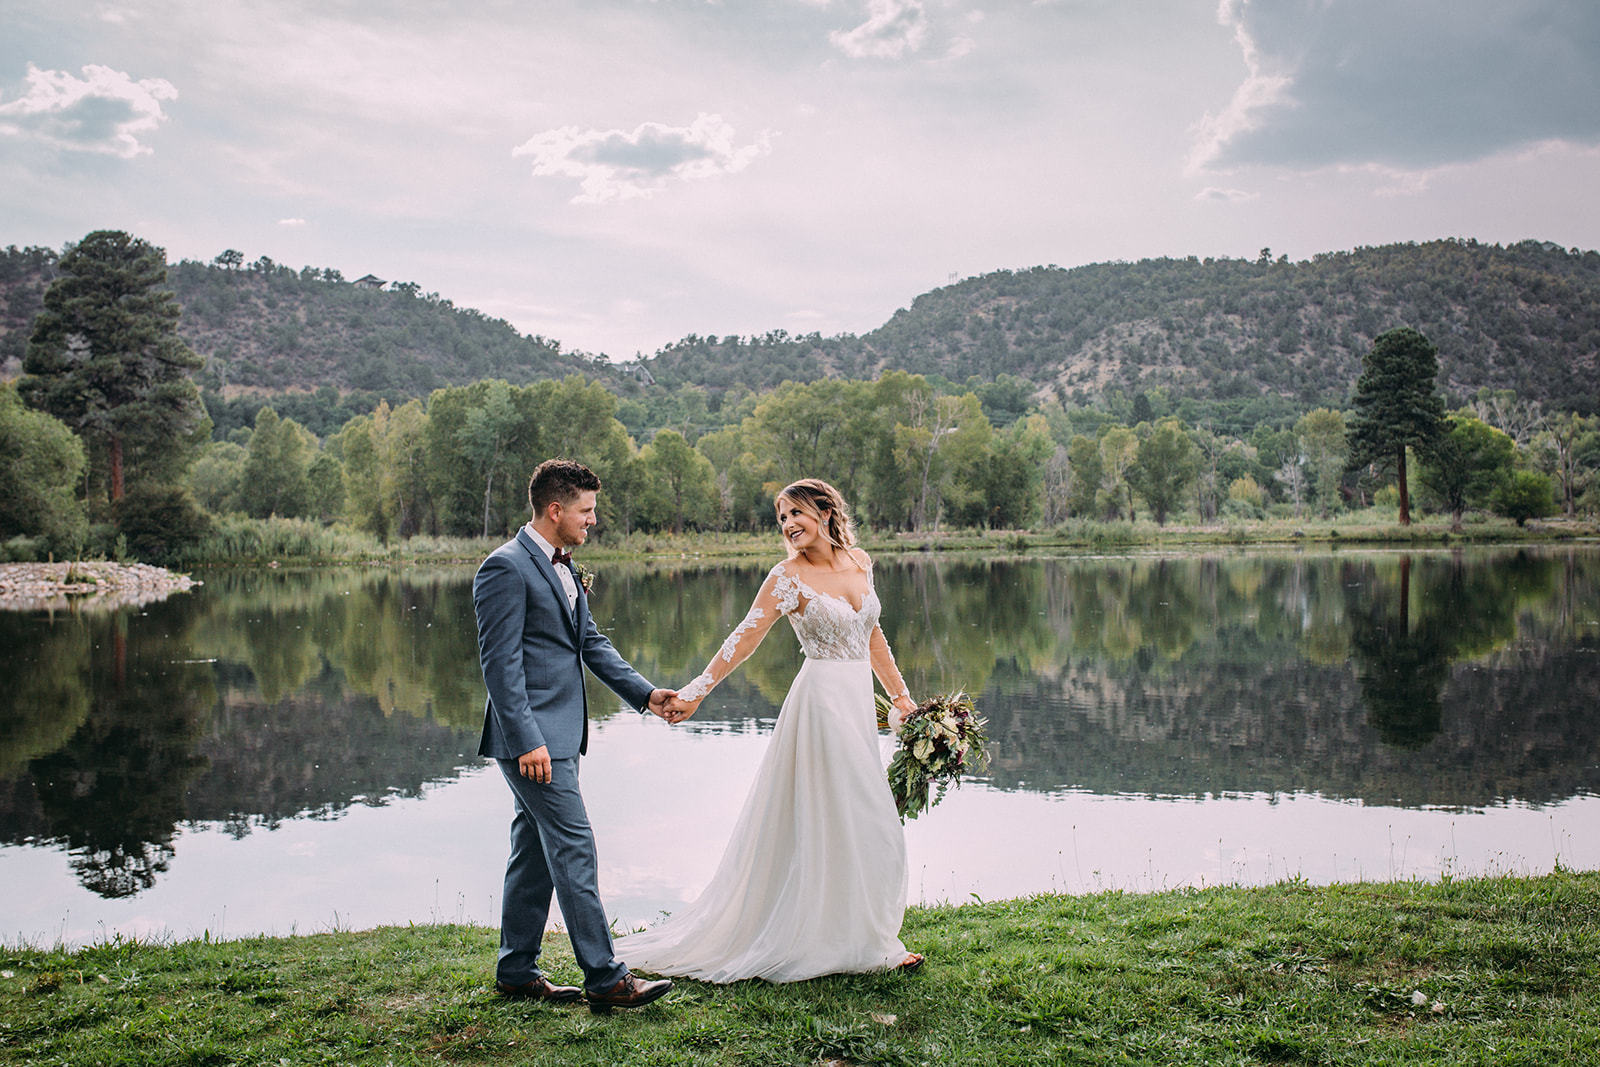 Ginger Moose Photography – April's Garden Weddings | Durango, Colorado  Wedding Florist